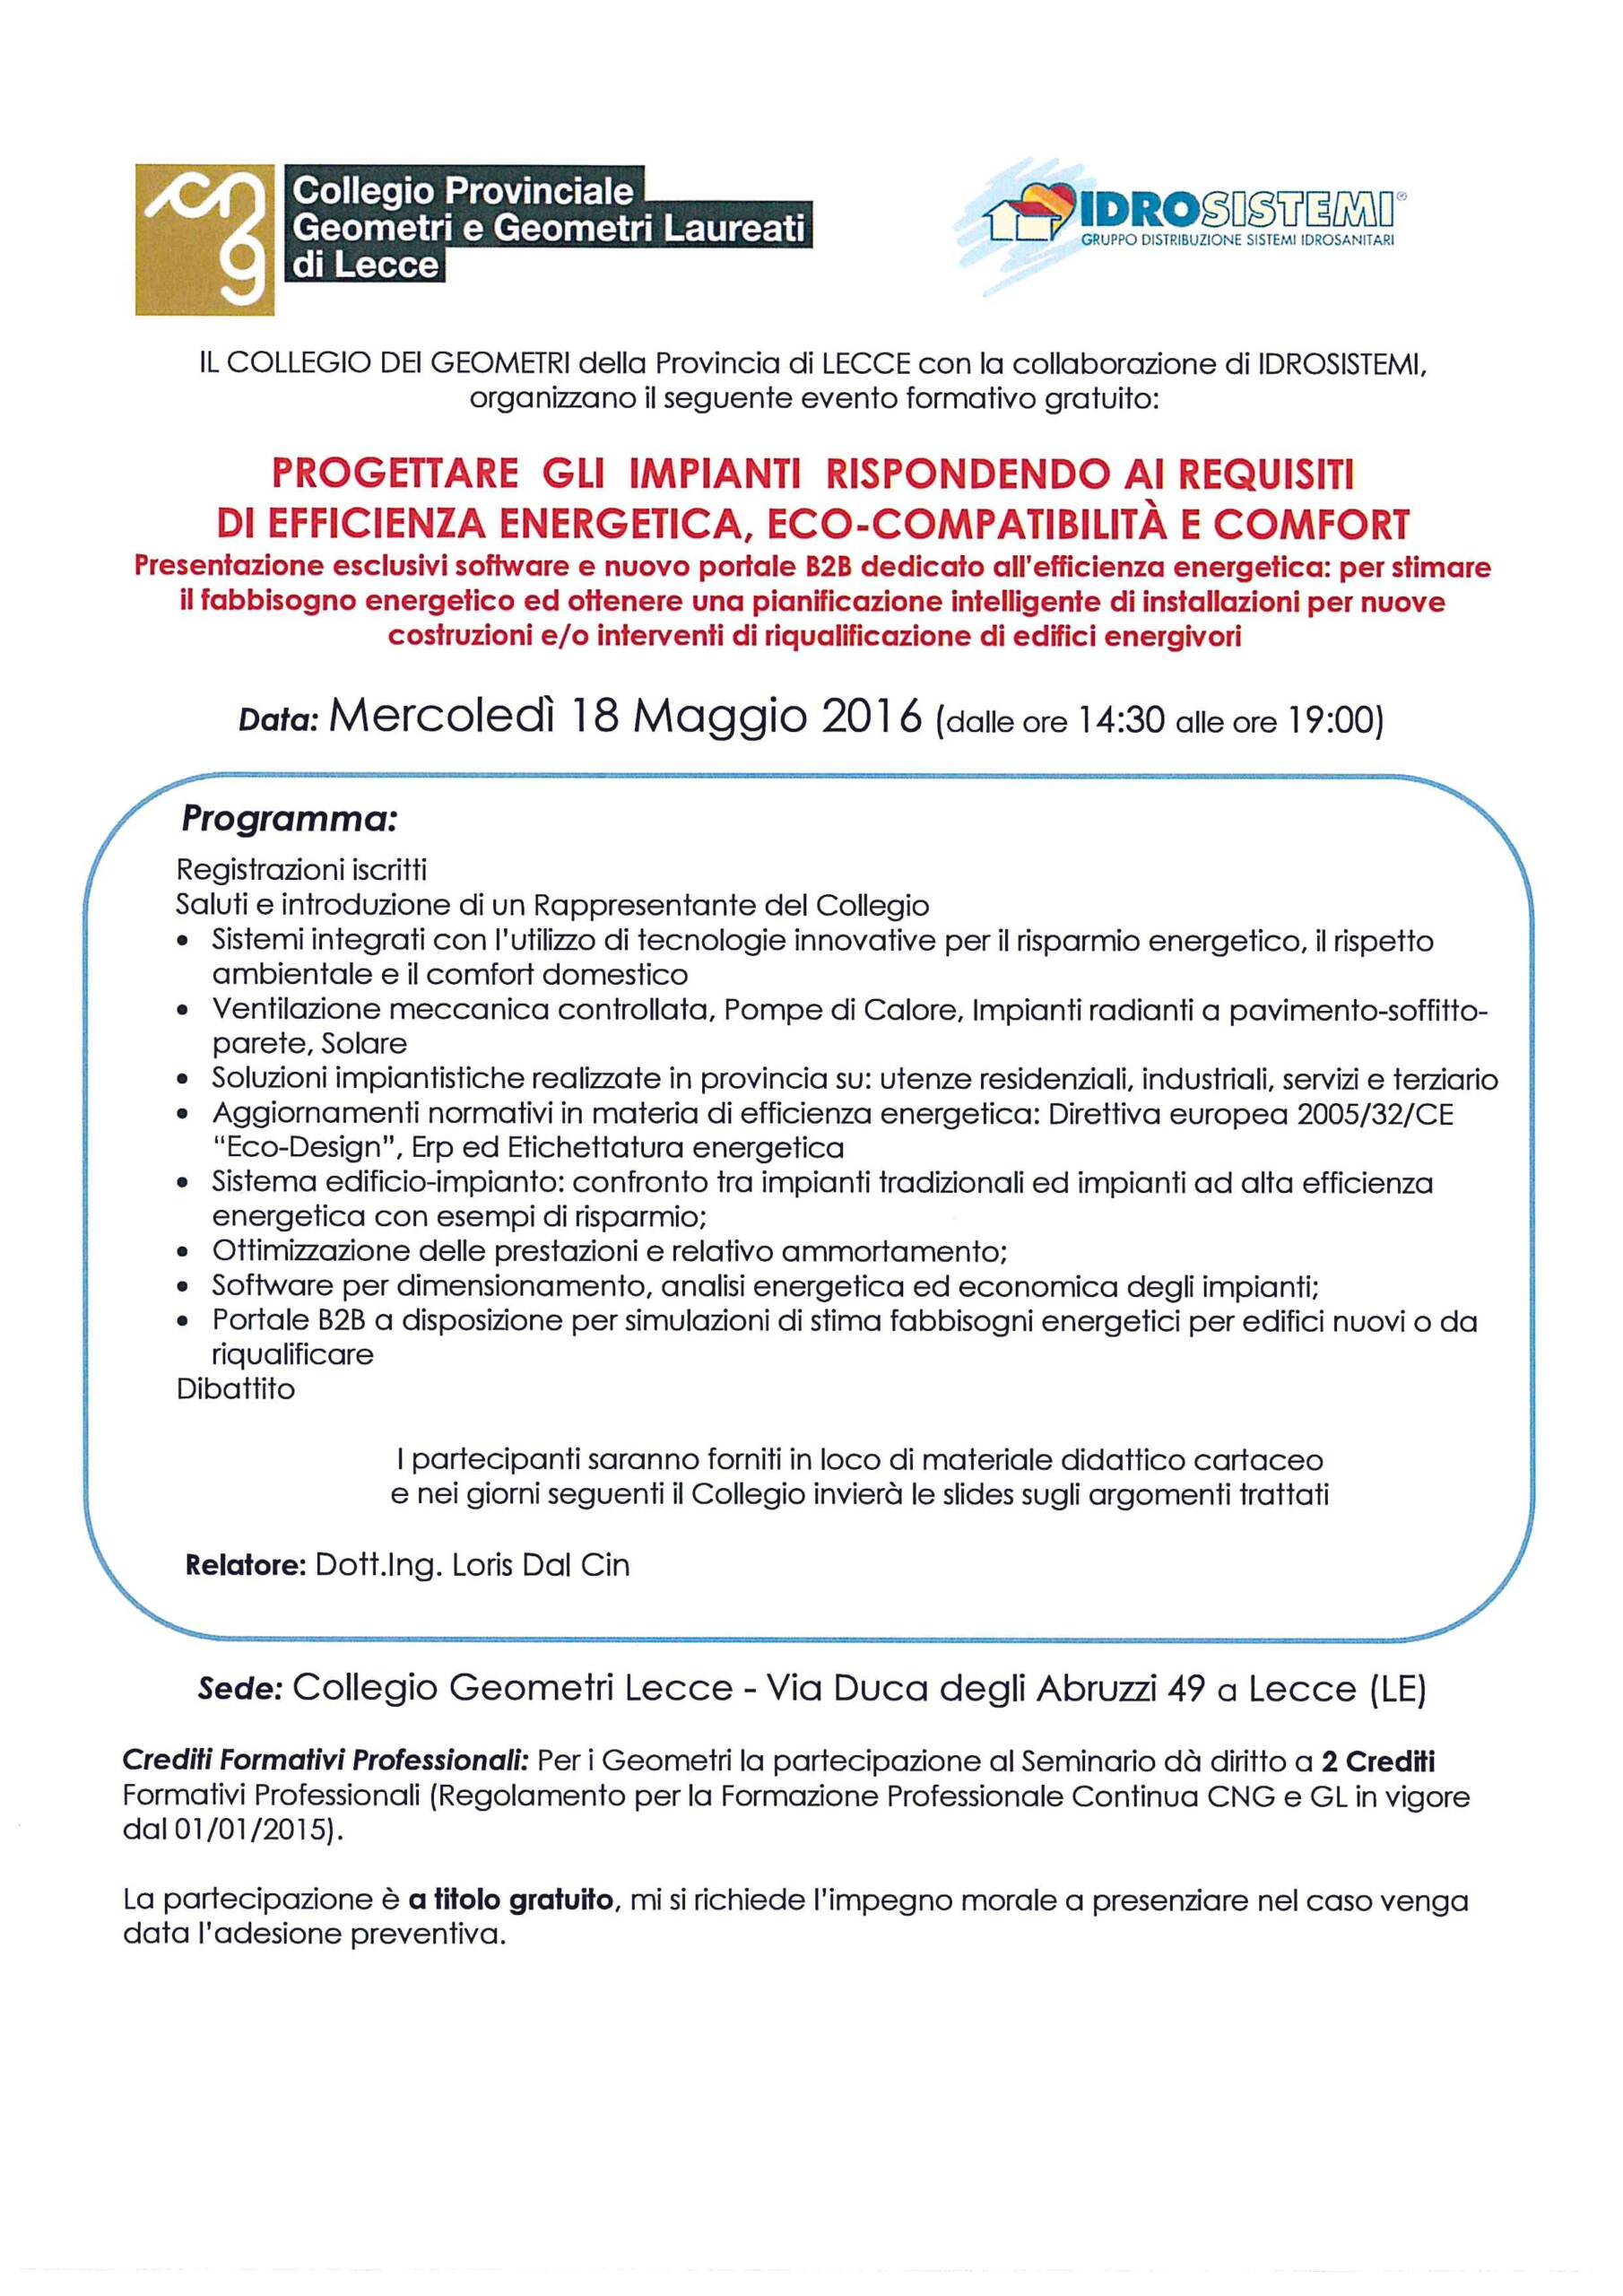 Seminario tecnico “Progettare gli impianti rispondendo ai requisiti di efficienza energetica, eco-compatibilità e comfort” – Lecce 18/05/2016